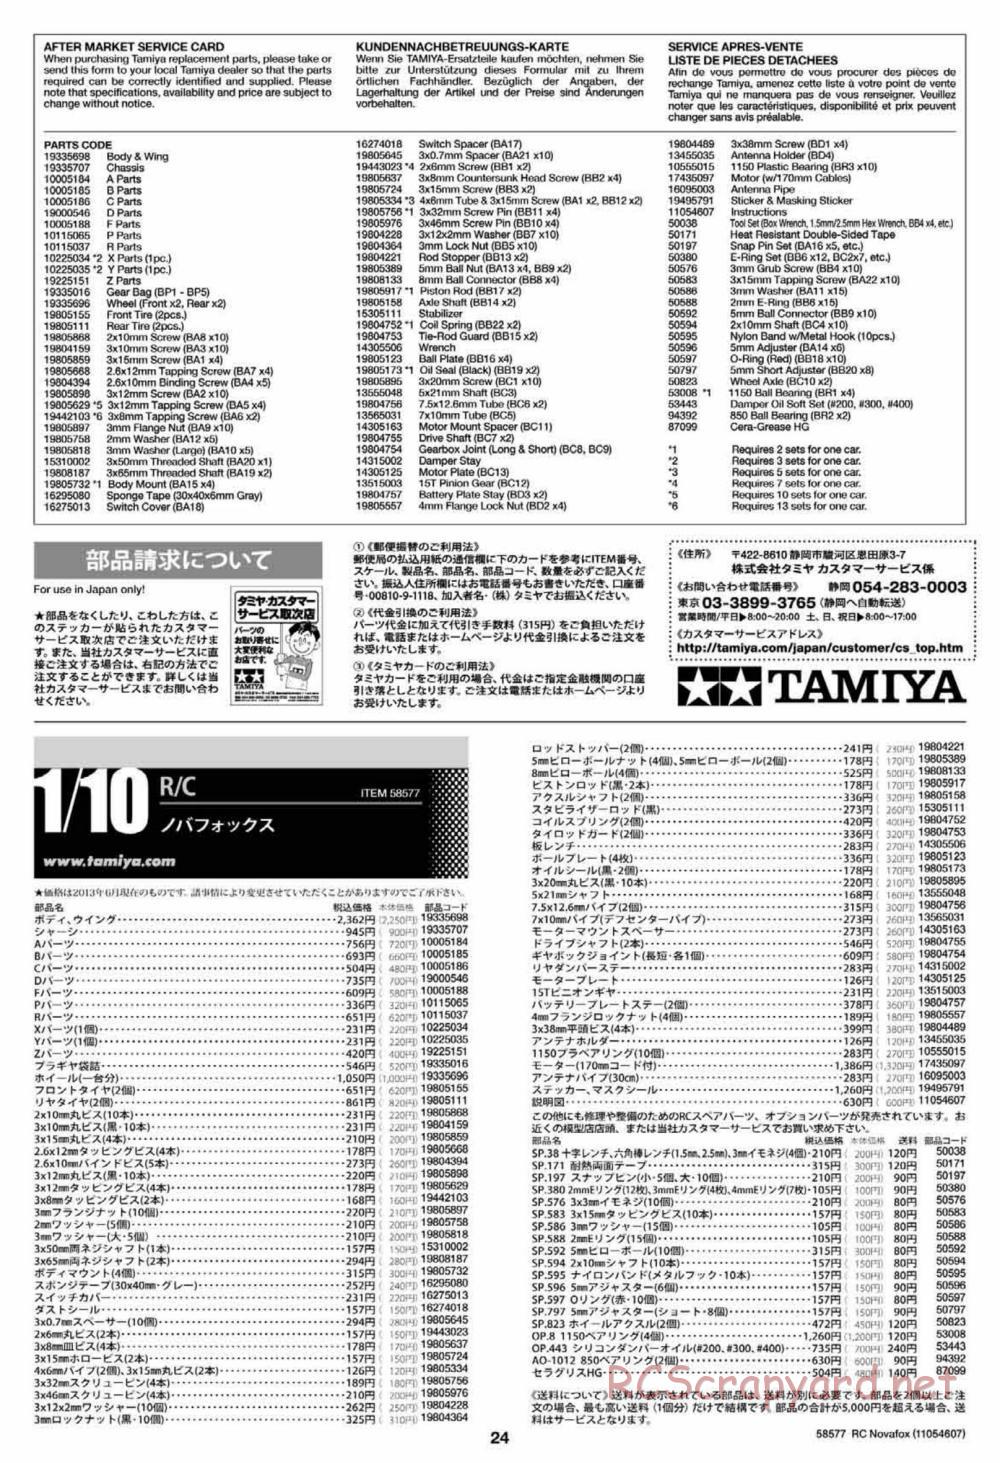 Tamiya - Novafox Chassis - Manual - Page 24